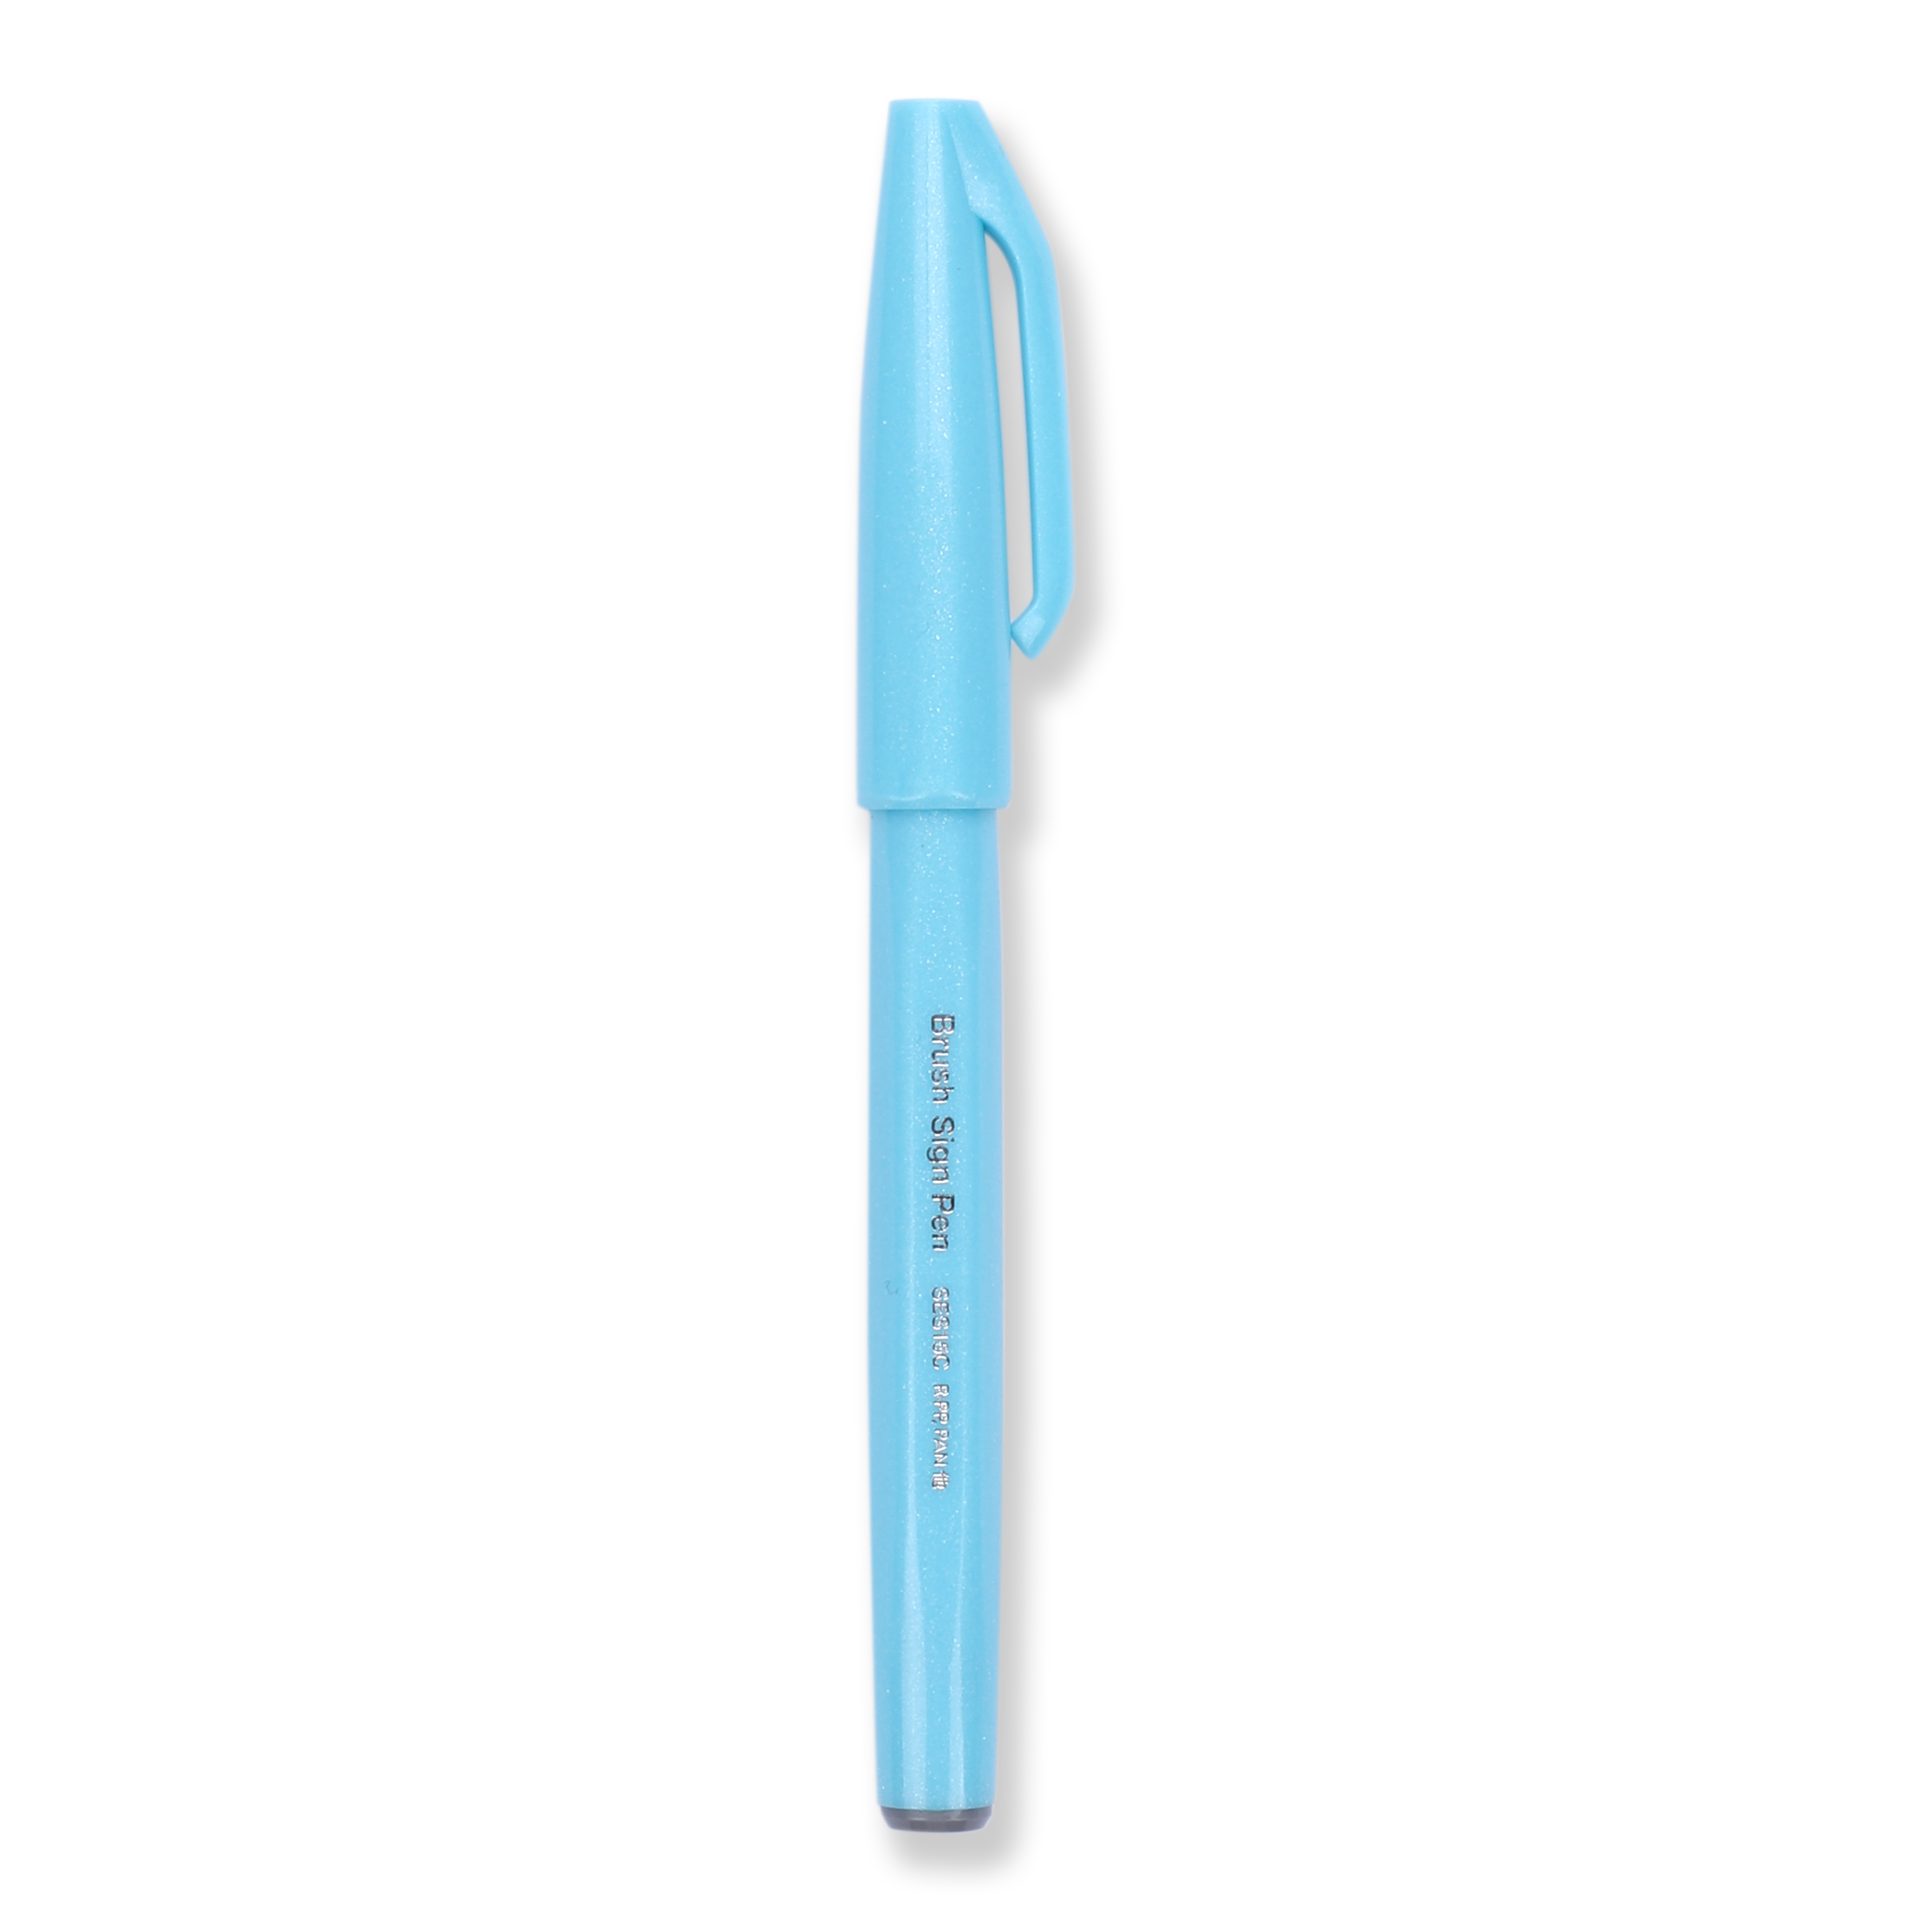 Pentel Fude Touch Brush Sign Pen - Pale Blue - 2020 New Colors